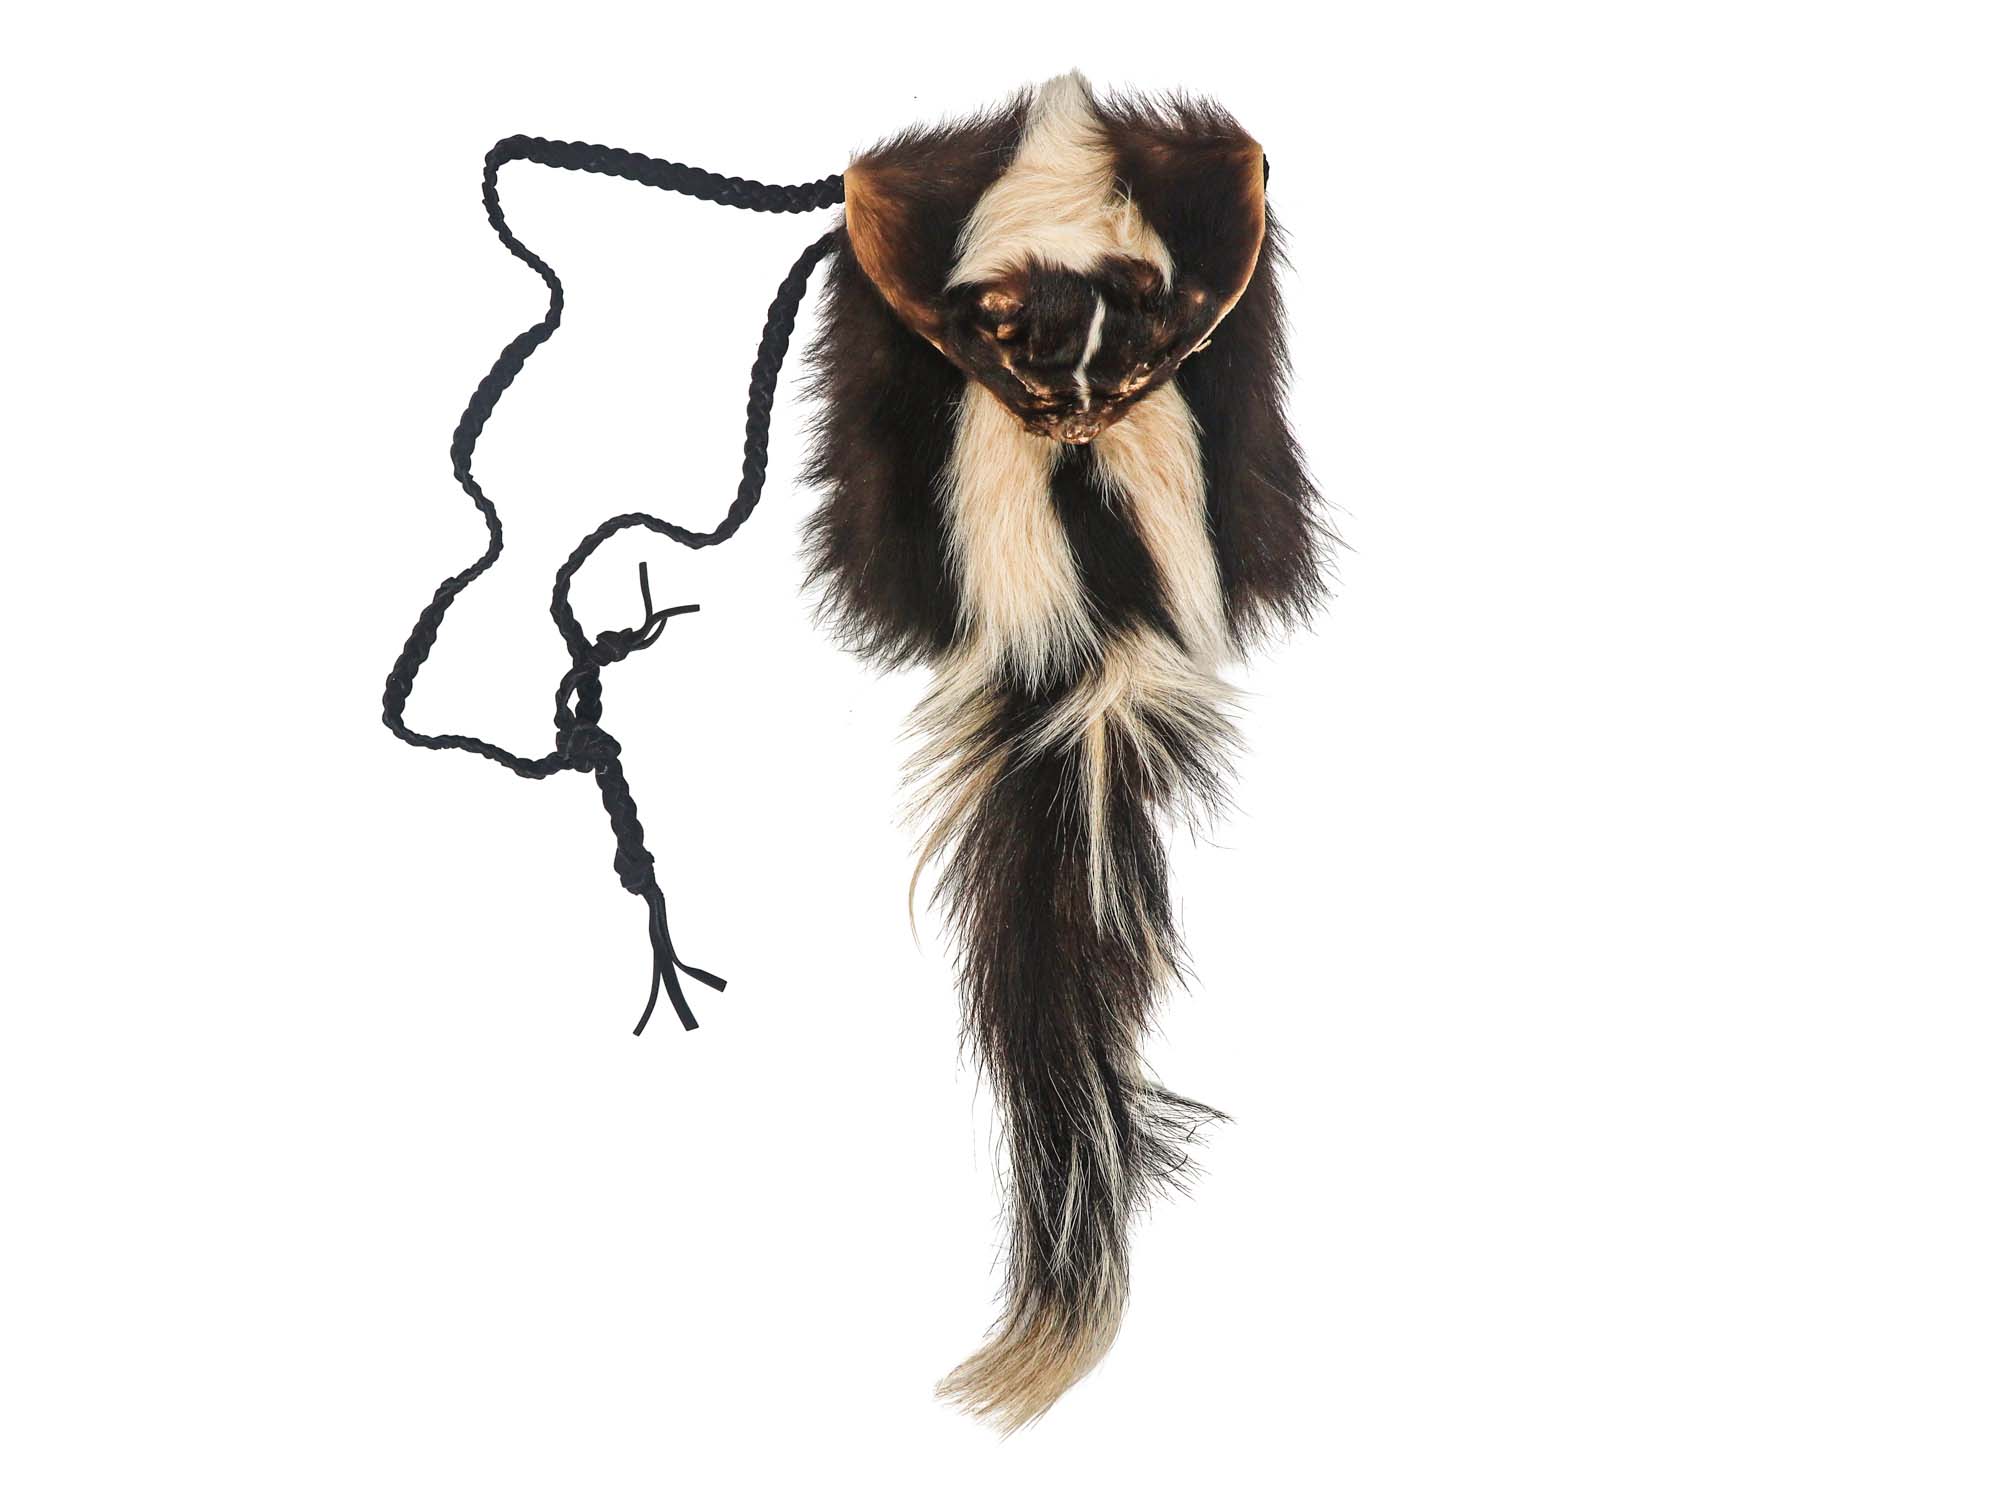 Deluxe Skunk Bag: Gallery Item skunk bags